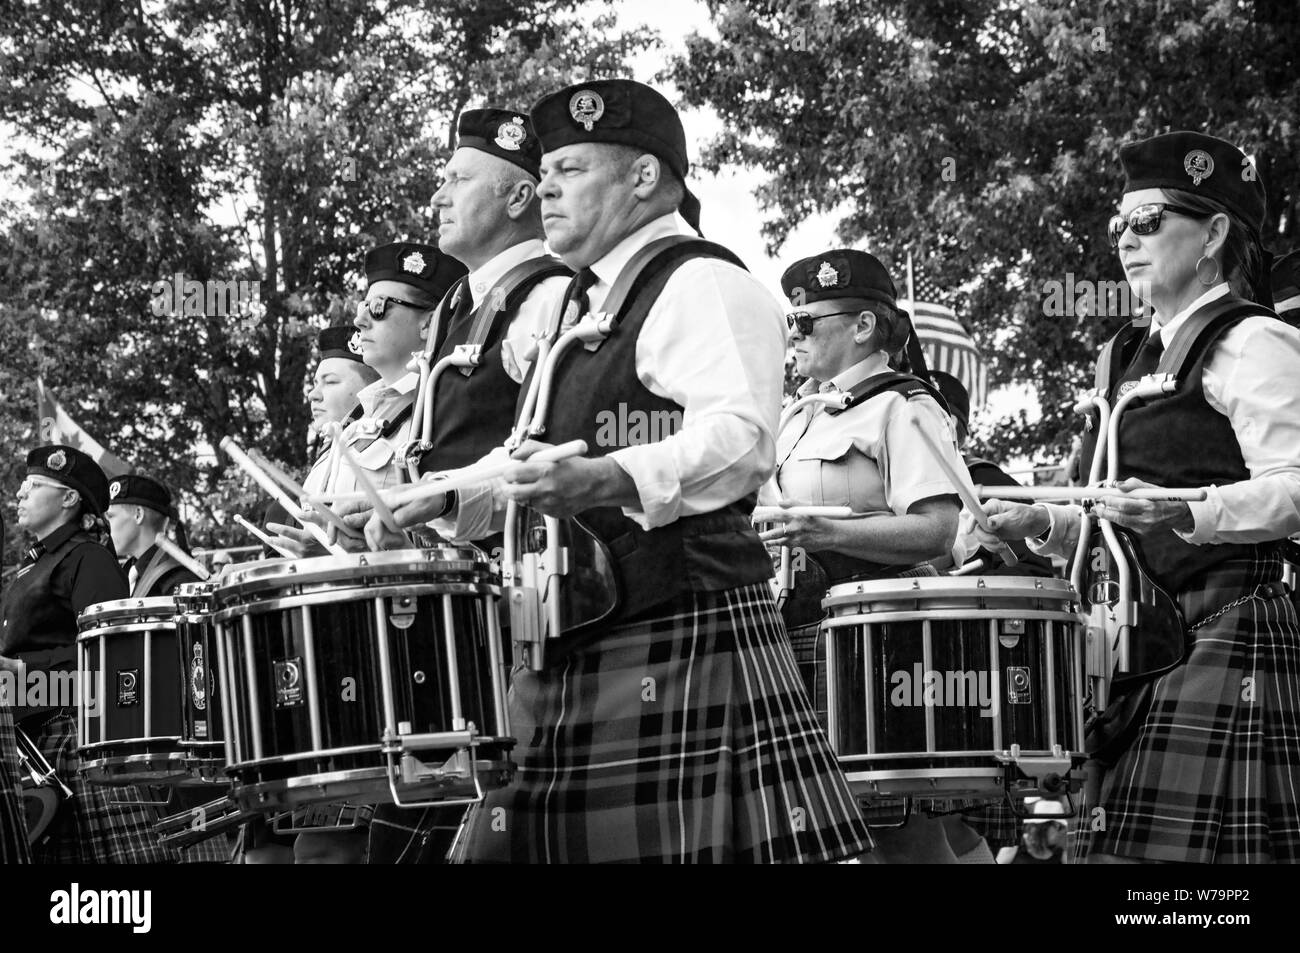 Fergus, Ontario, Kanada - 08 11 2018: Drummer der Rohre und Trommeln Band paricipating in der Pipe Band Contest von Pipers und Pipe Band Gesellschaft Stockfoto